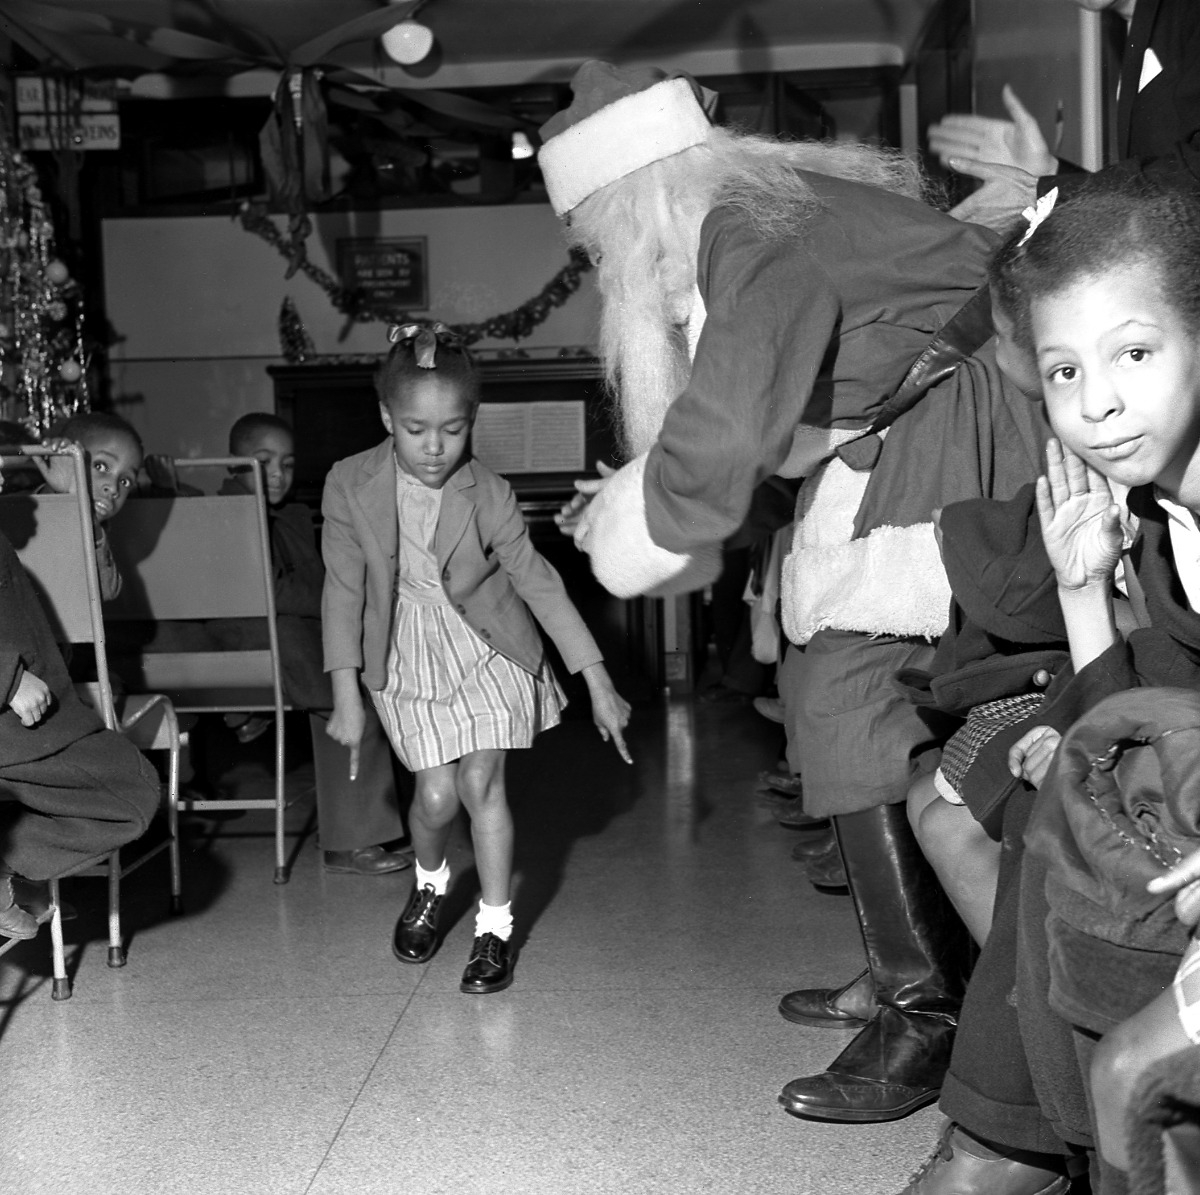 Dancing with Santa Claus, Sydenham Hospital, Harlem, New York, c.1947-1948